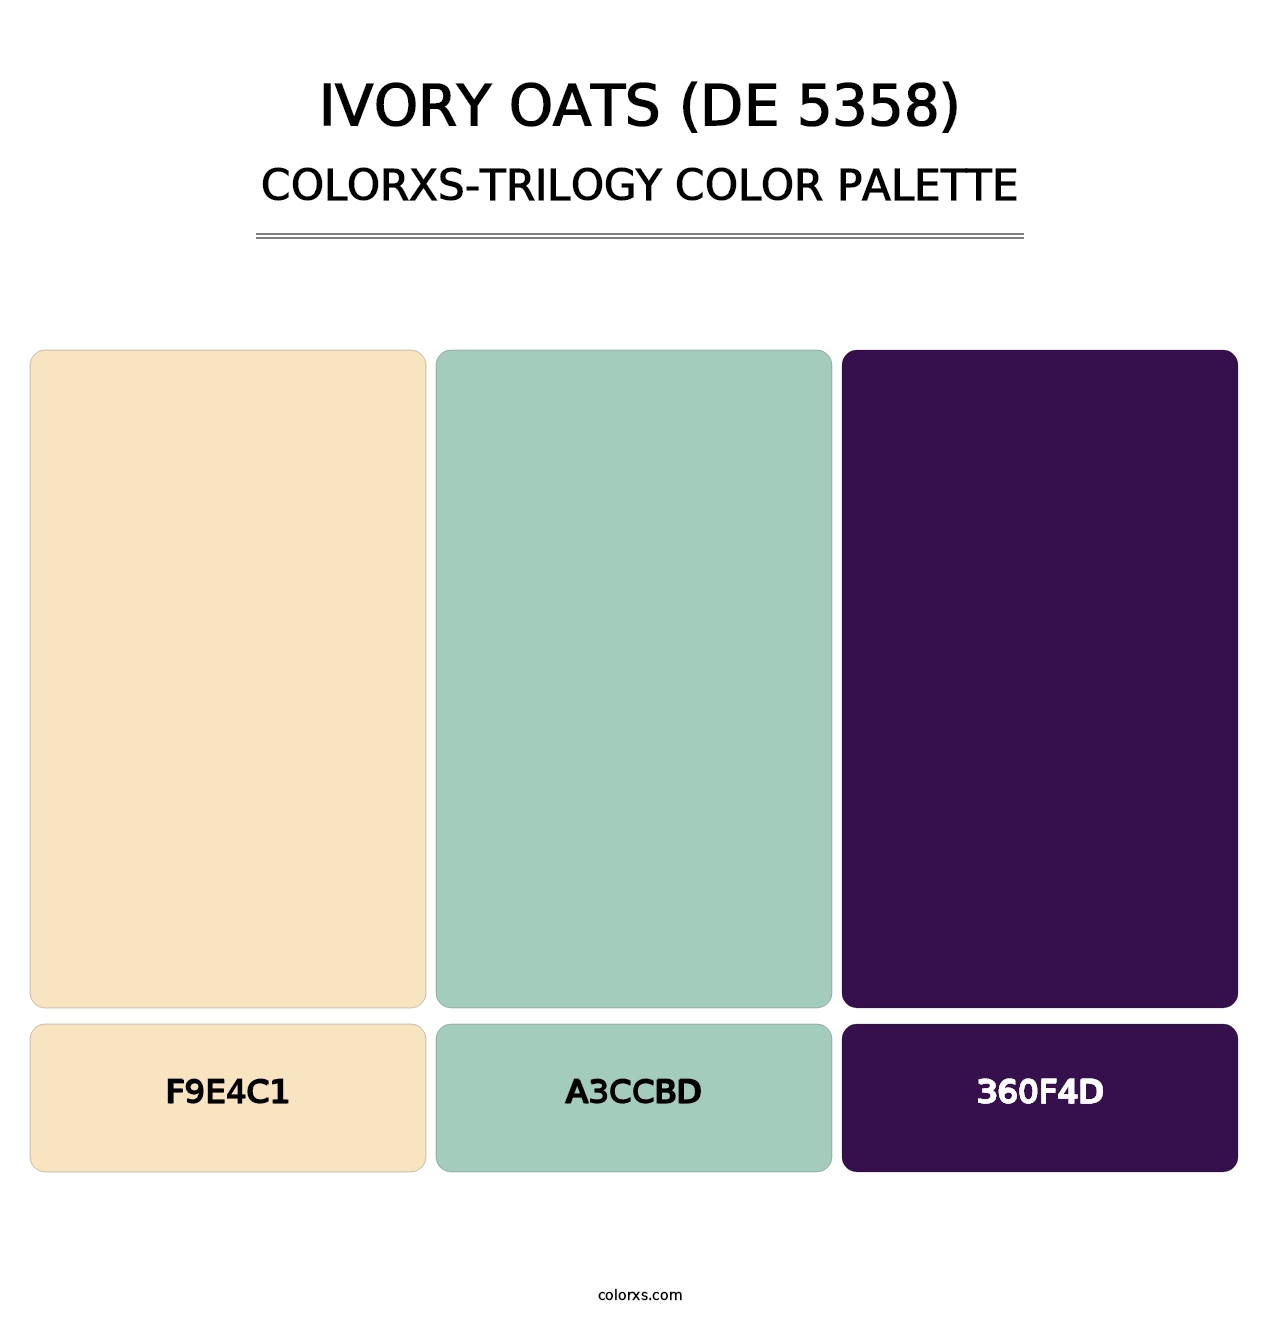 Ivory Oats (DE 5358) - Colorxs Trilogy Palette